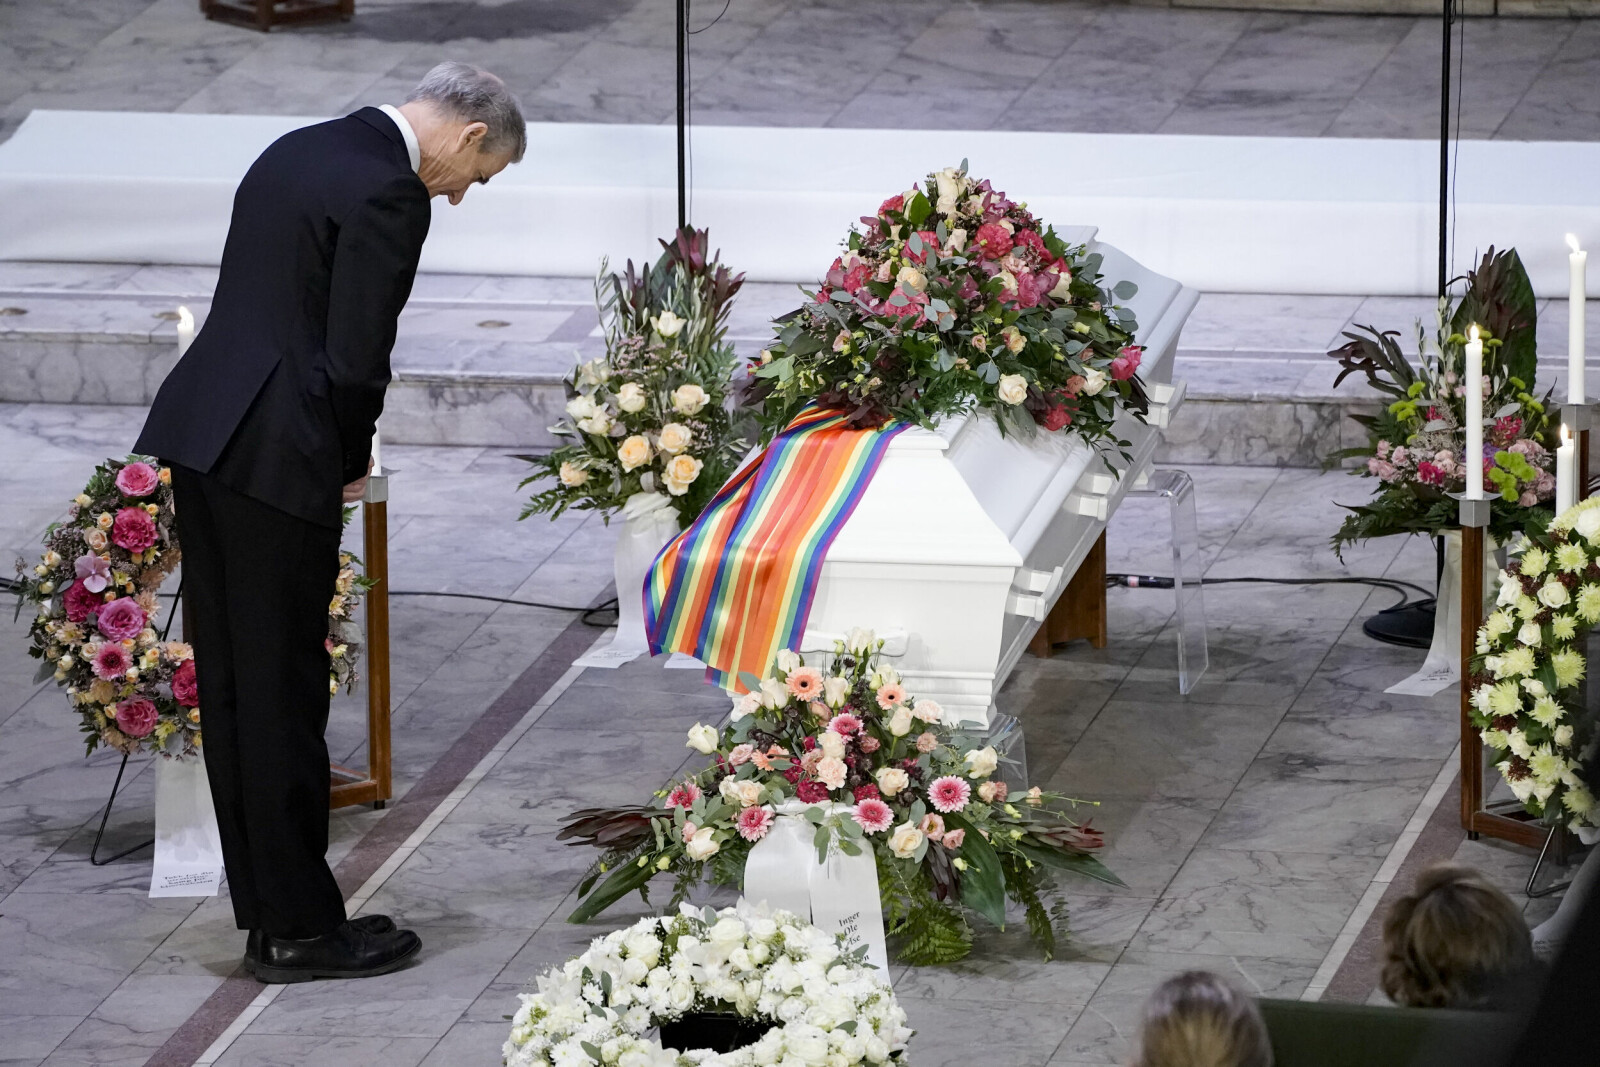 Jonas Gahr Støre bukket ved båren etter sin tale i begravelsen. – Kim Friele satte ord på urettferdigheten, uttalte statsministeren.